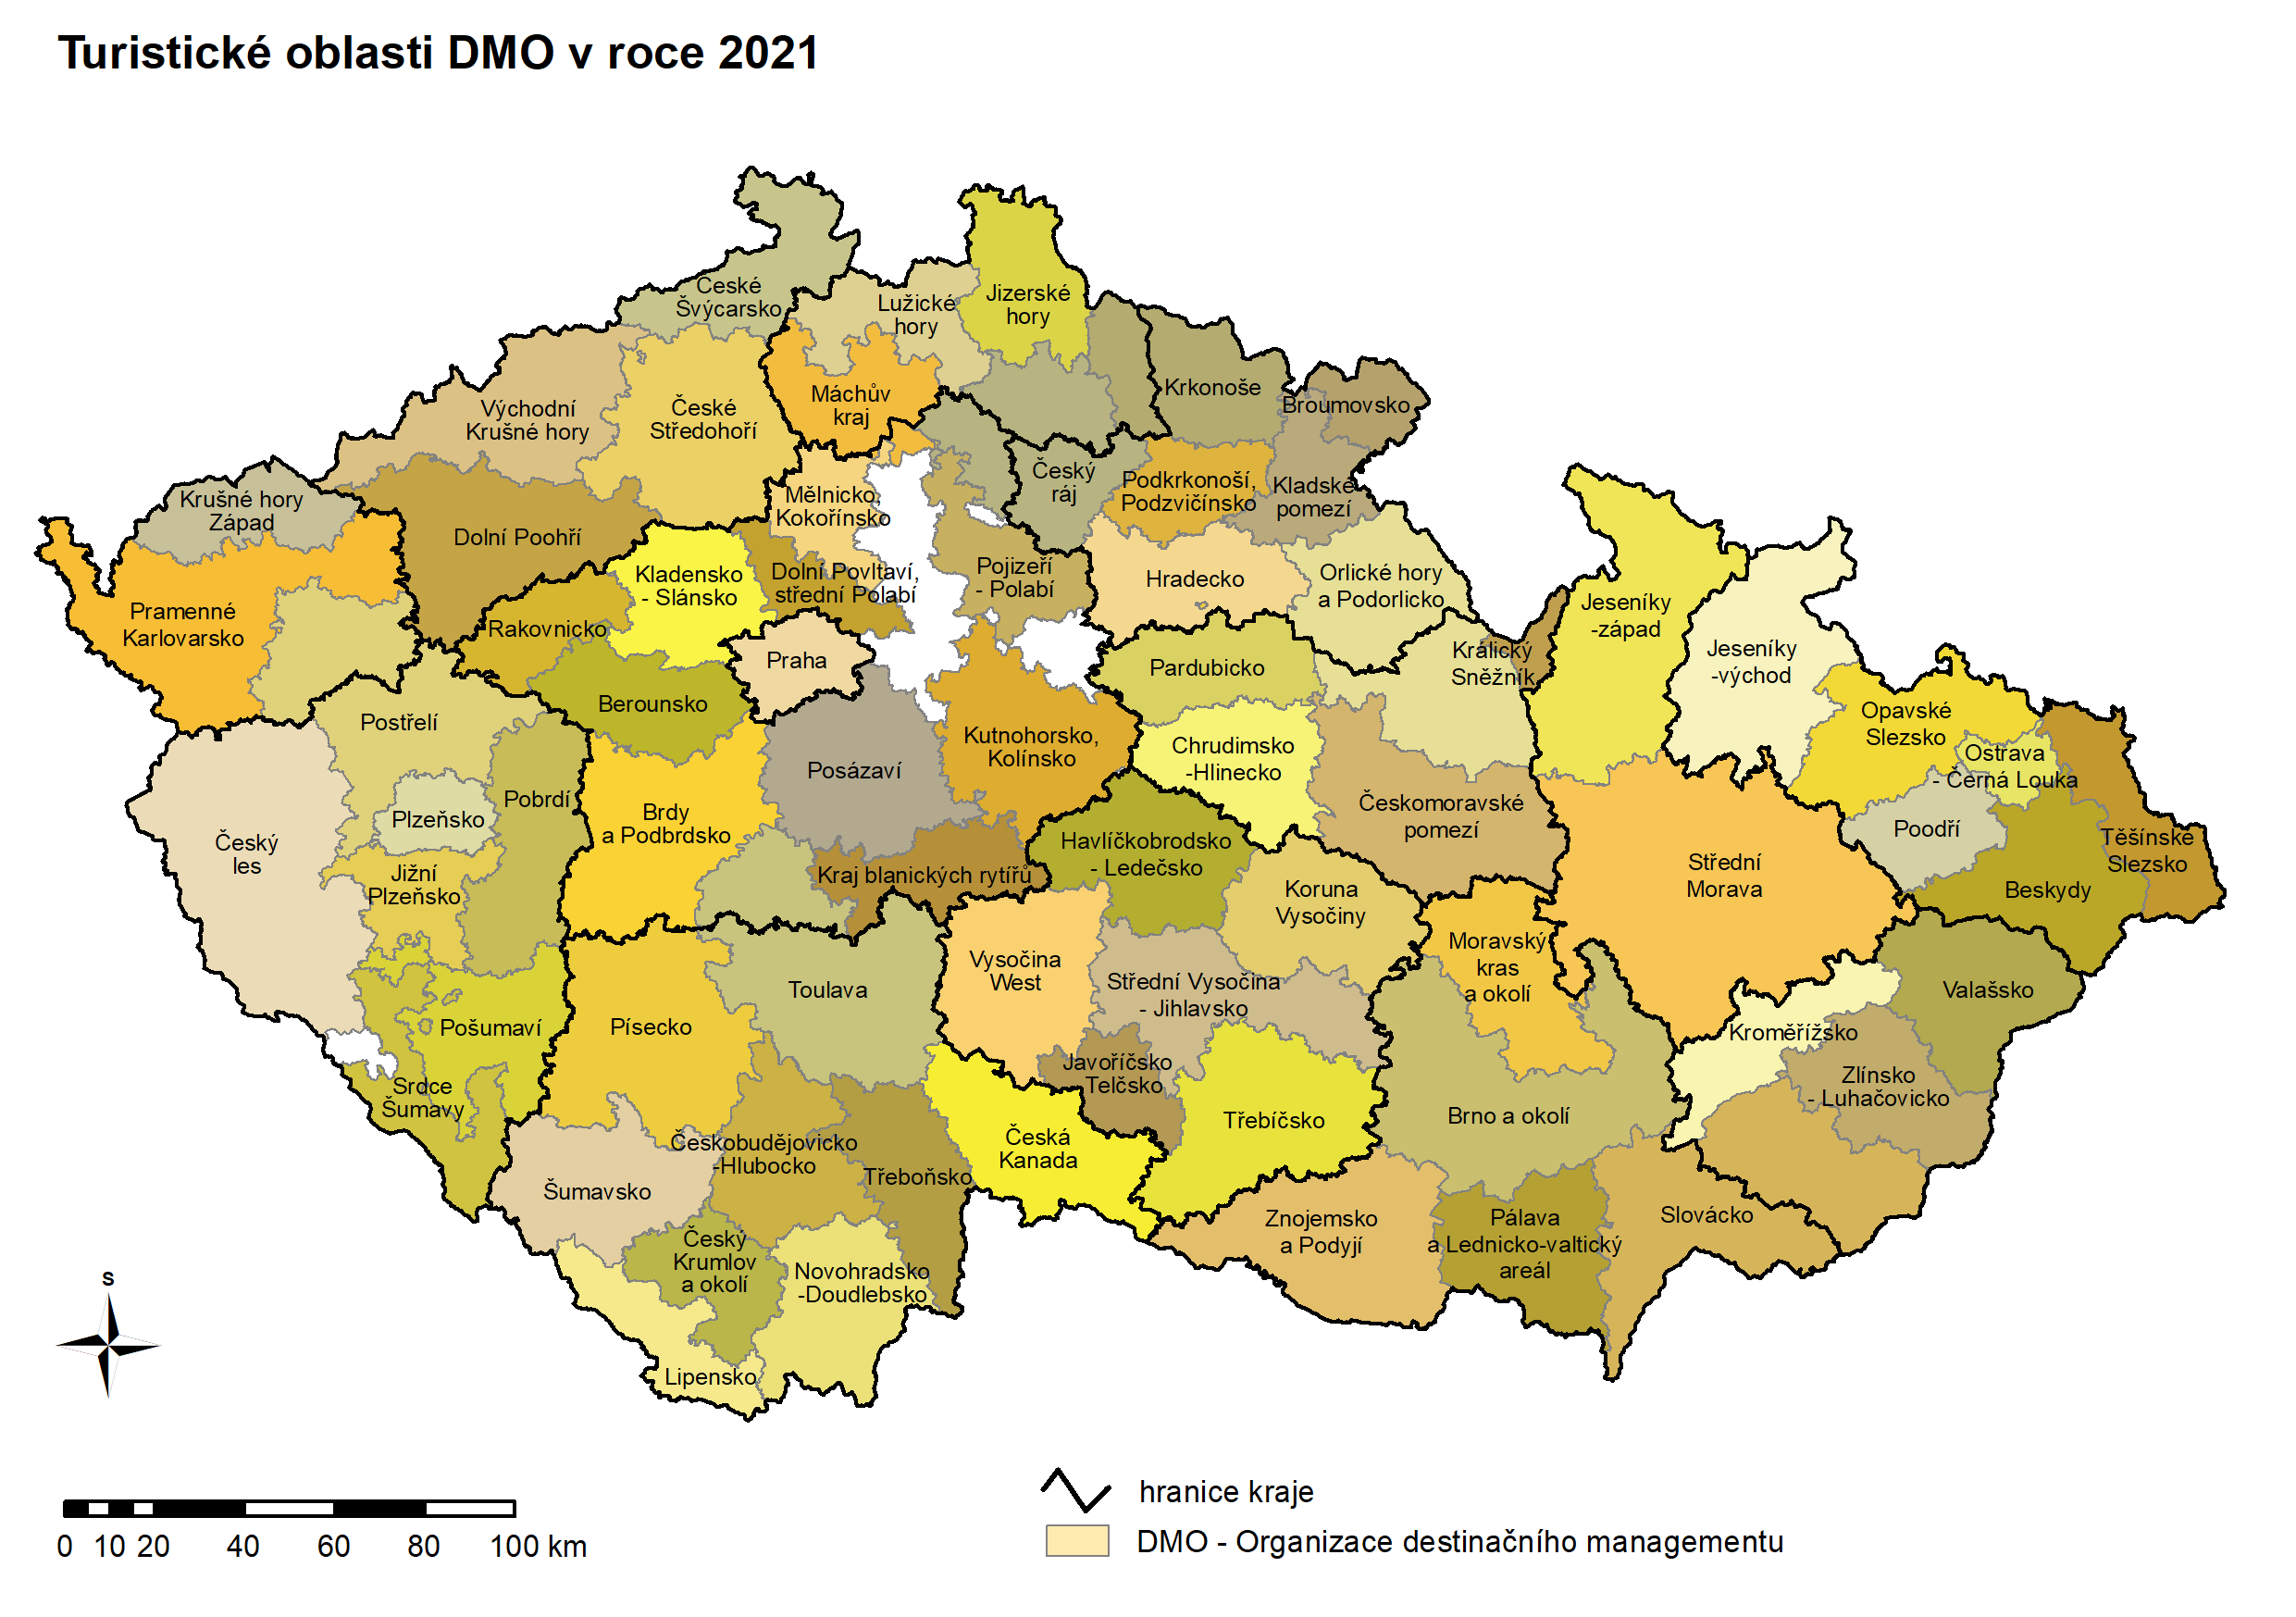 Mapa - turistické oblasti (DMO) v roce 2021